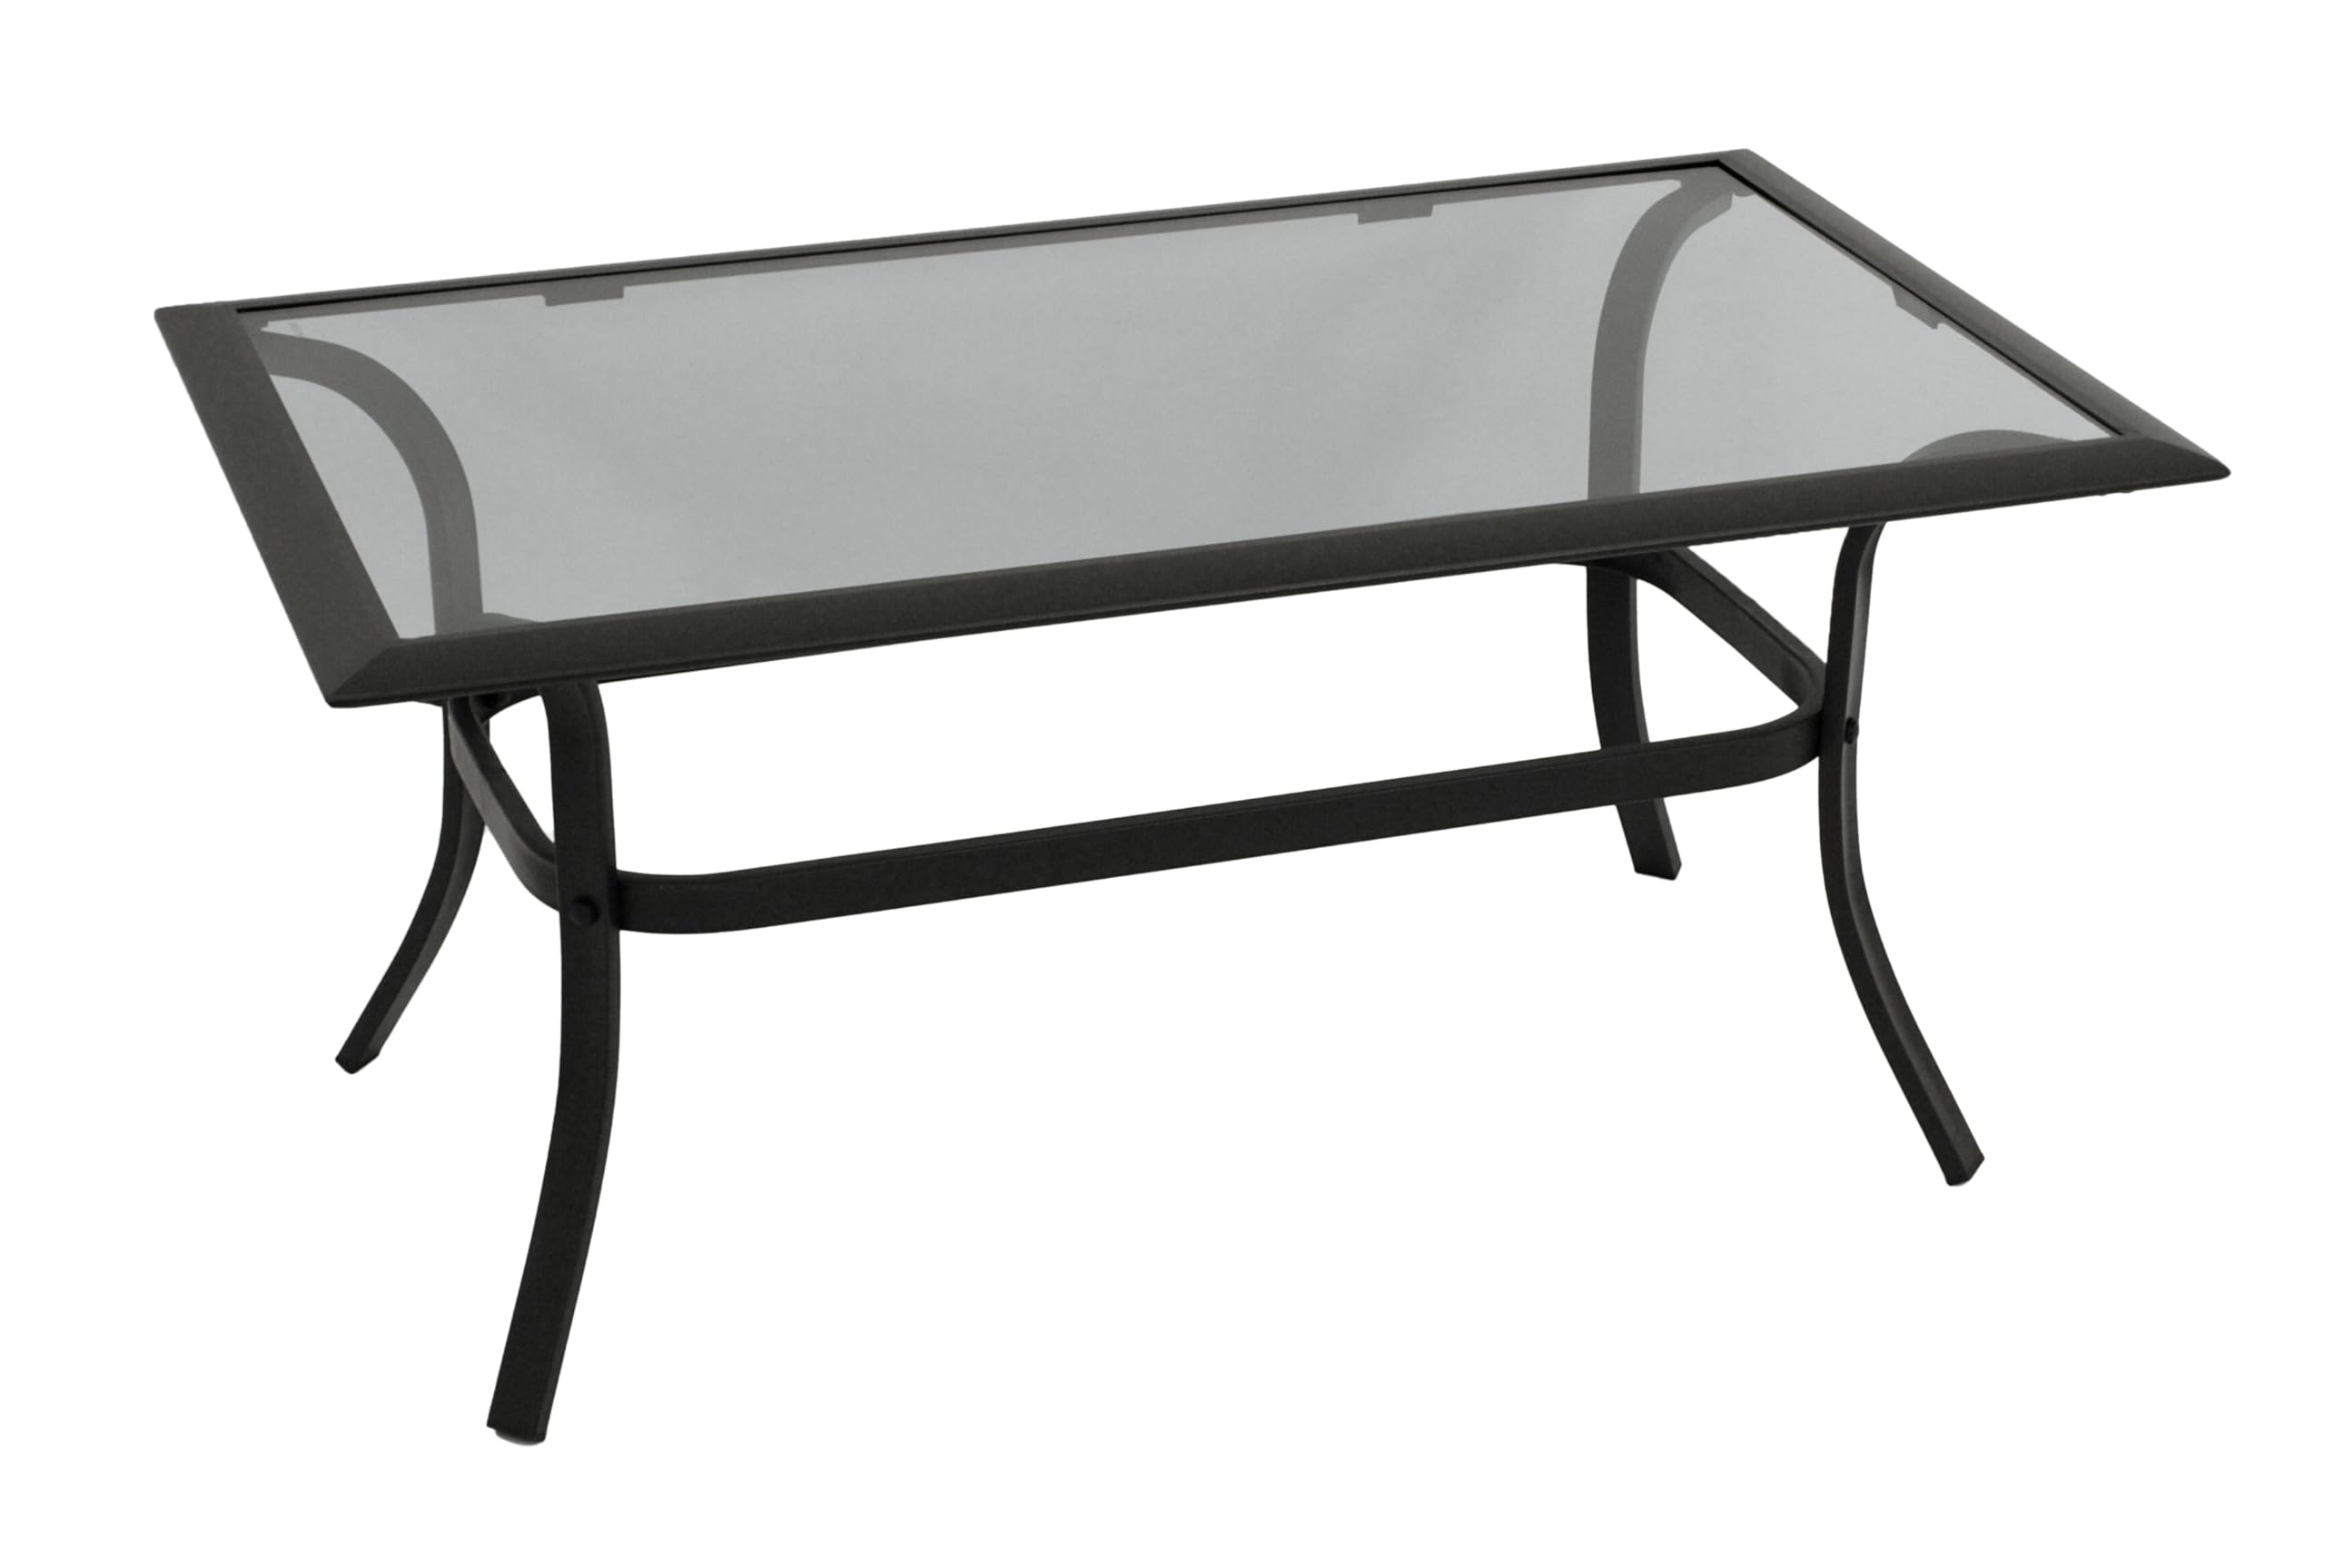 DEGAMO Beistelltisch Zagreb 102x61x48cm, Stahl schwarz, Tischplatte Glas grau getönt, Indoor und Outdoor